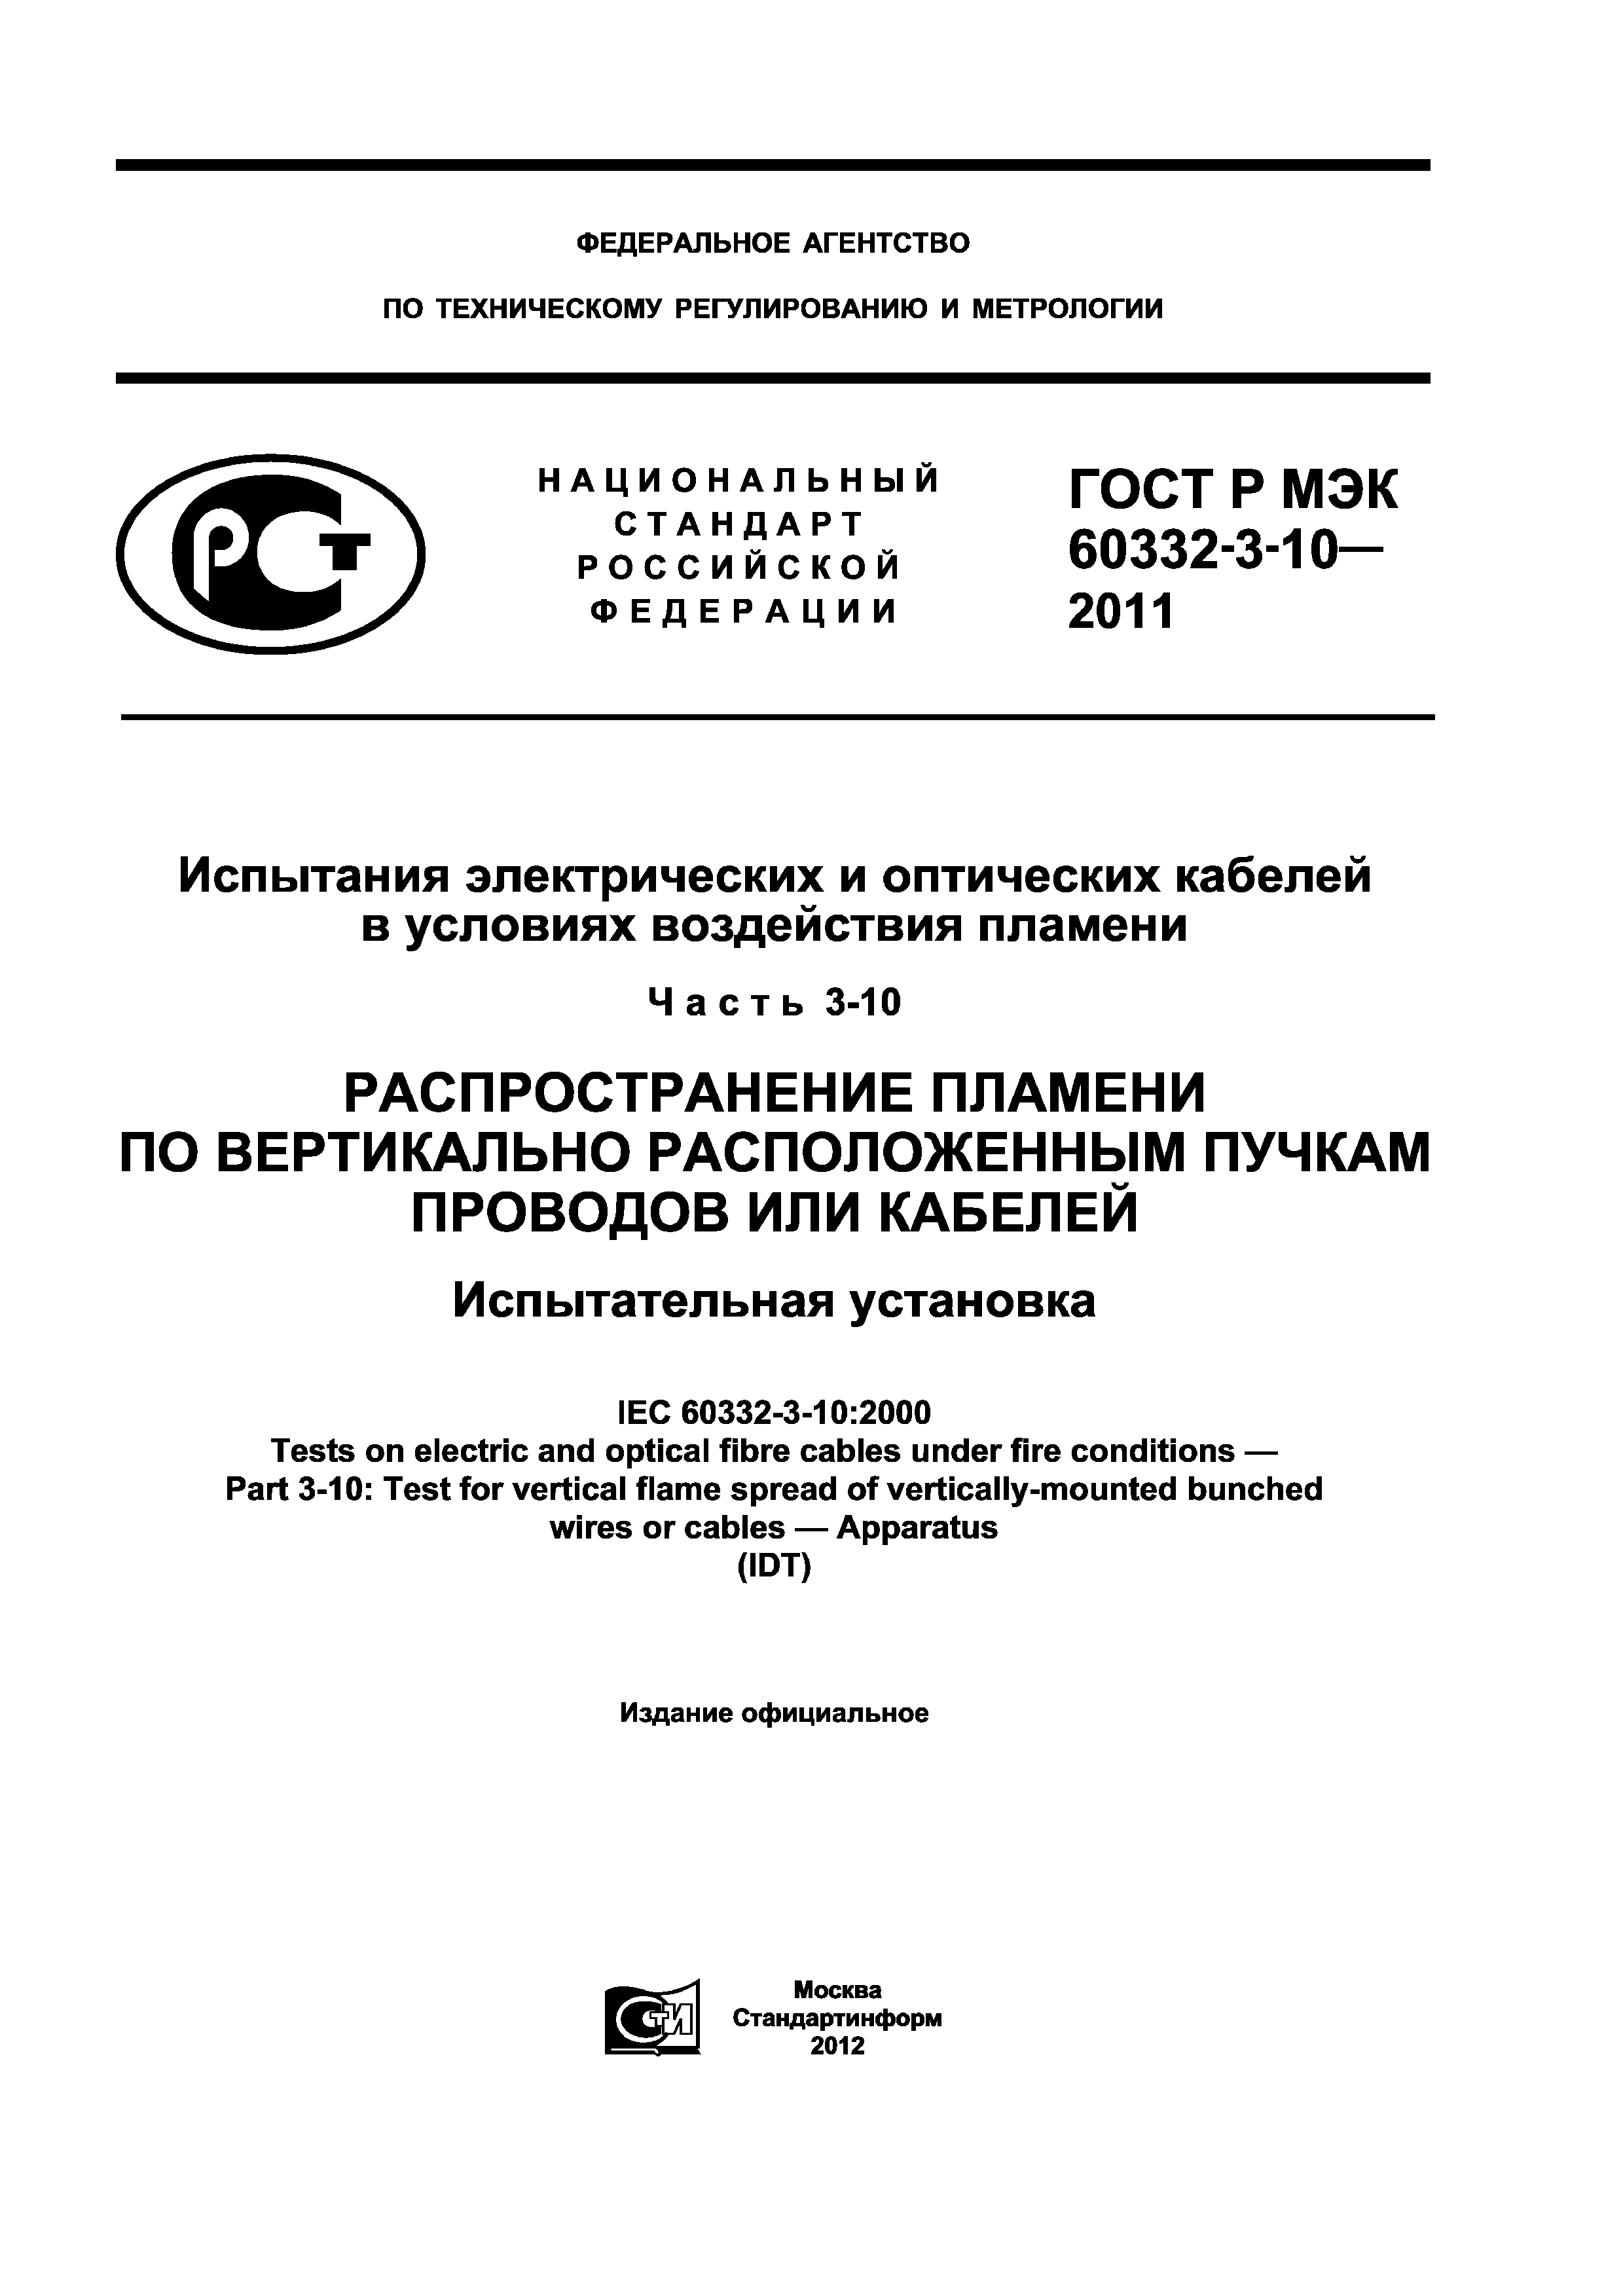 ГОСТ Р МЭК 60332-3-10-2011